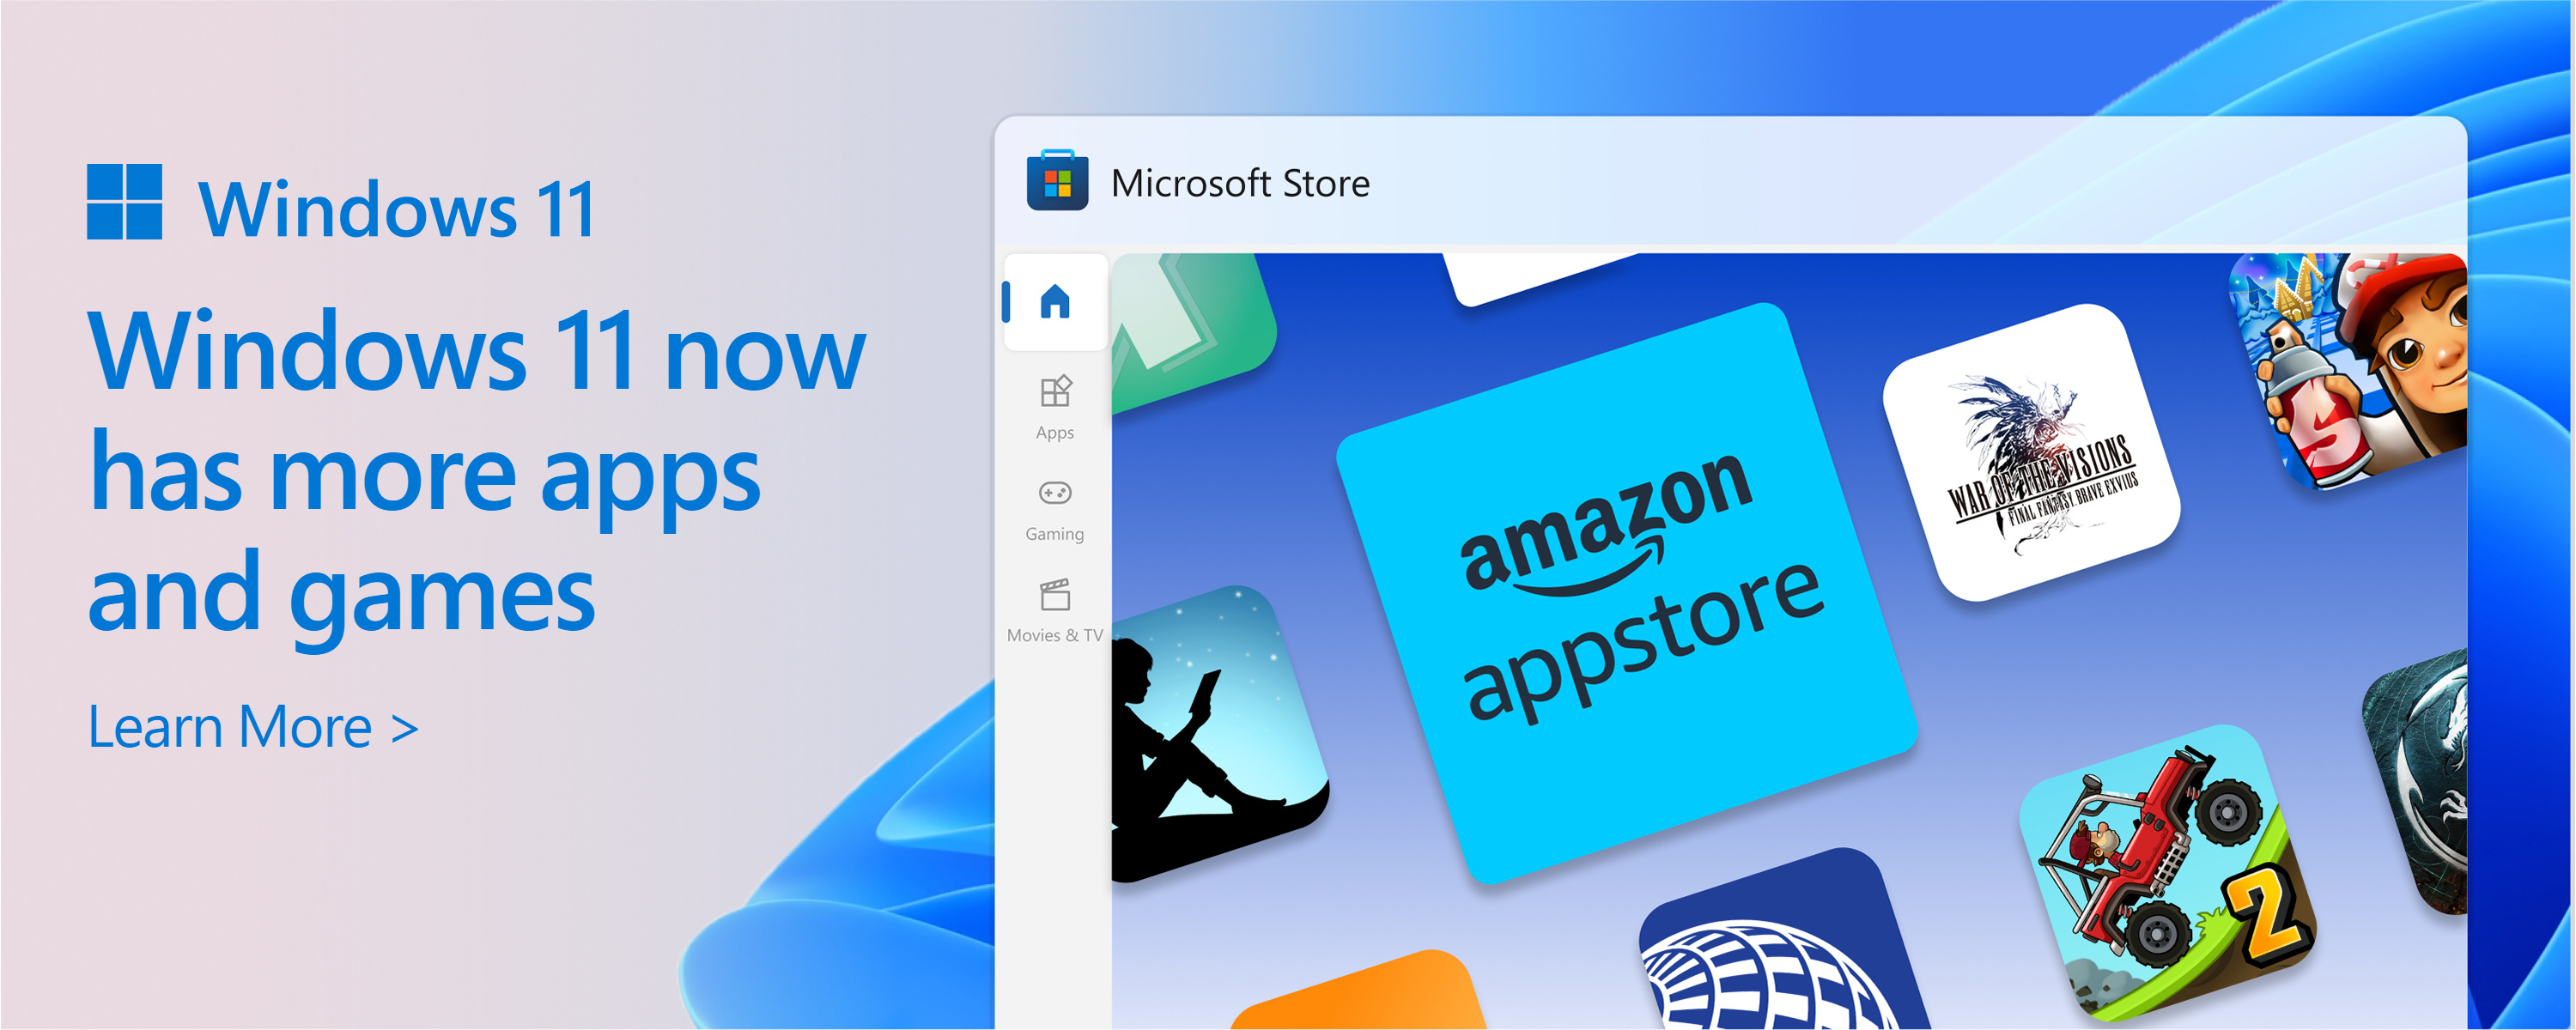 لقطة شاشة ل Microsoft Store مع النص: يتزايد كتالوج Microsoft Store. يمنحك Windows 11 المزيد من التطبيقات والألعاب التي تريدها وتحتاج إليها.